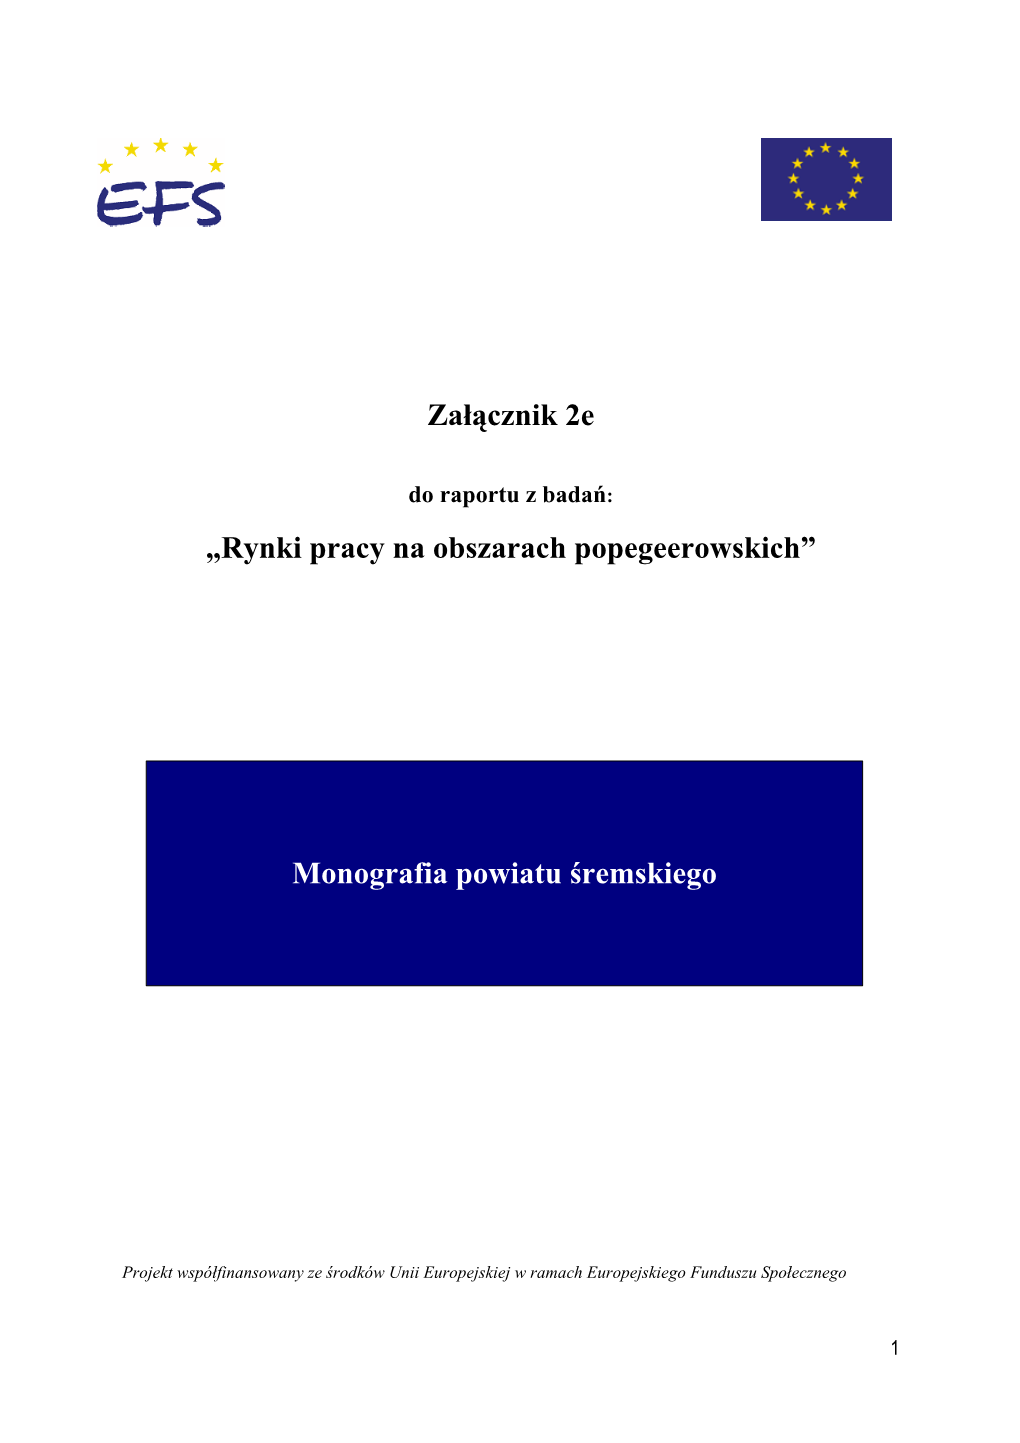 Monografia Powiatu Śremskiego